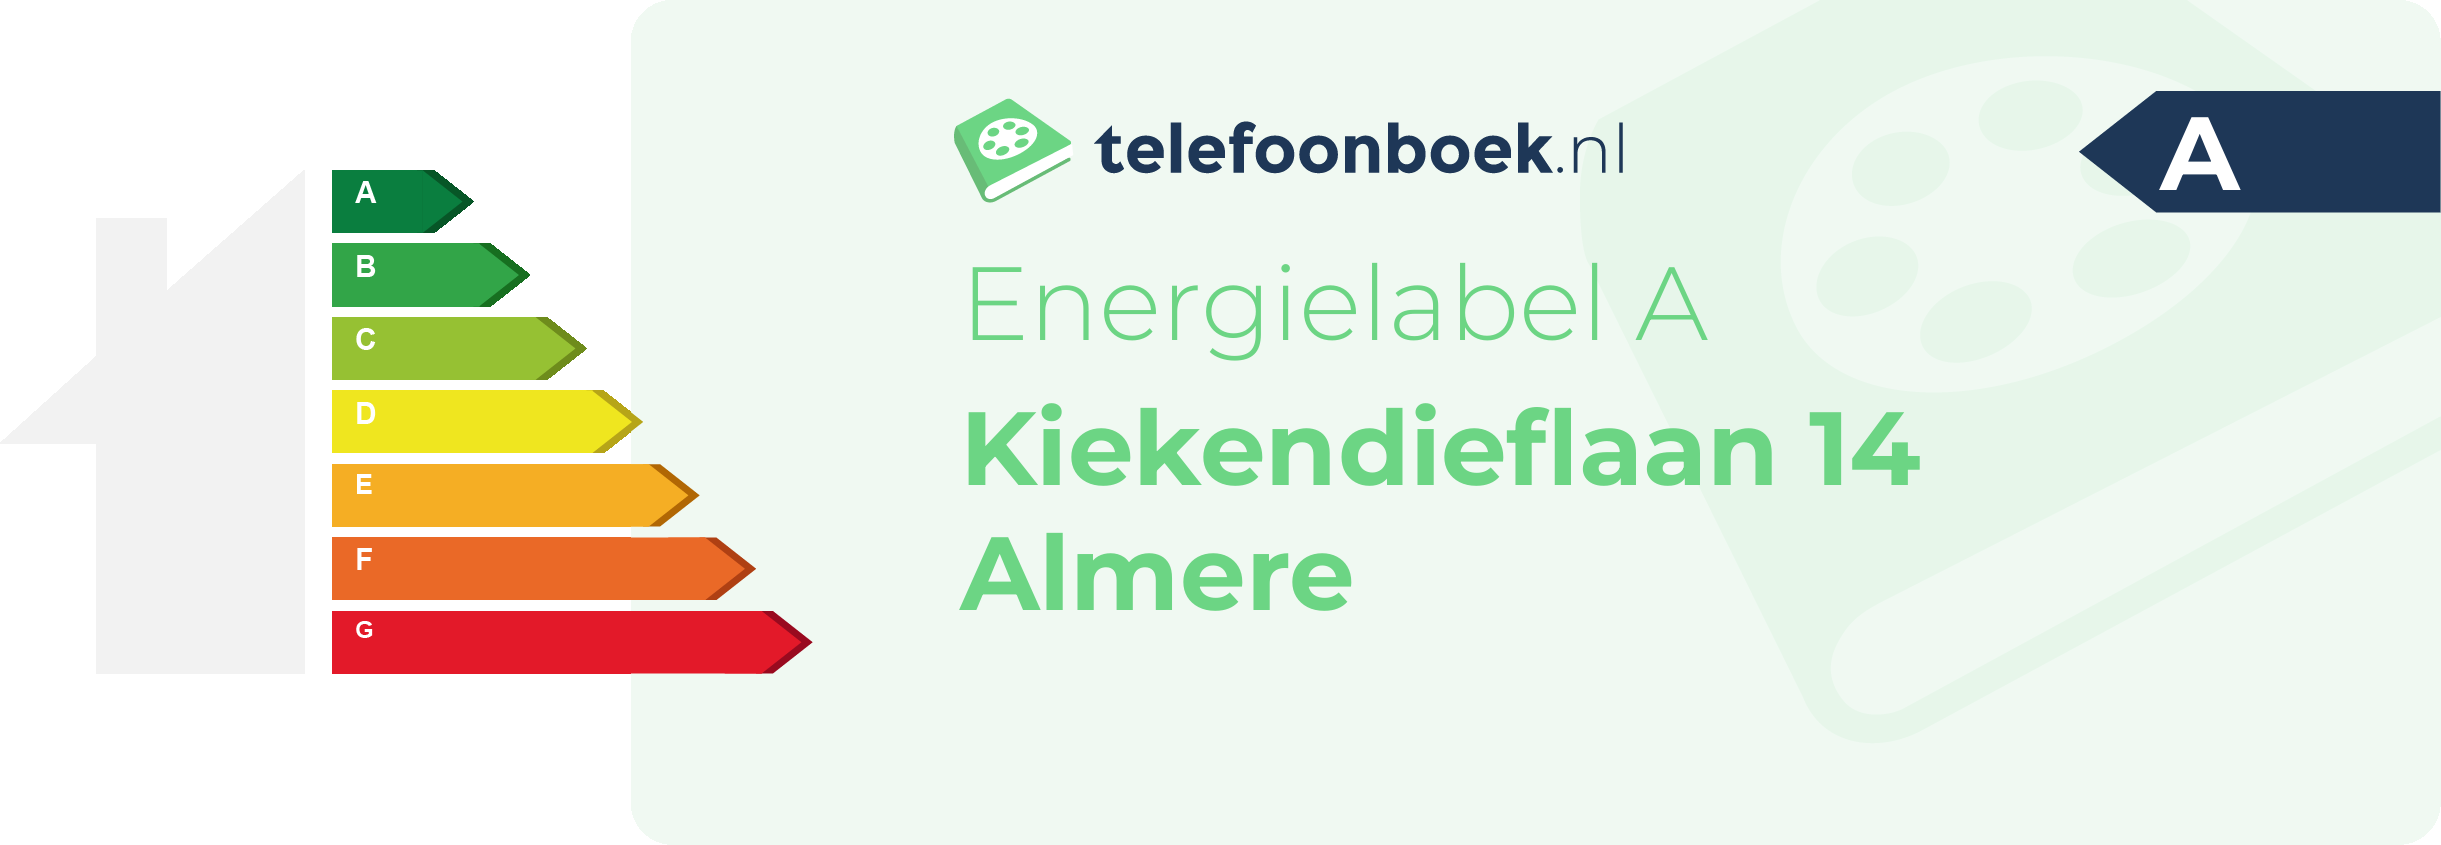 Energielabel Kiekendieflaan 14 Almere